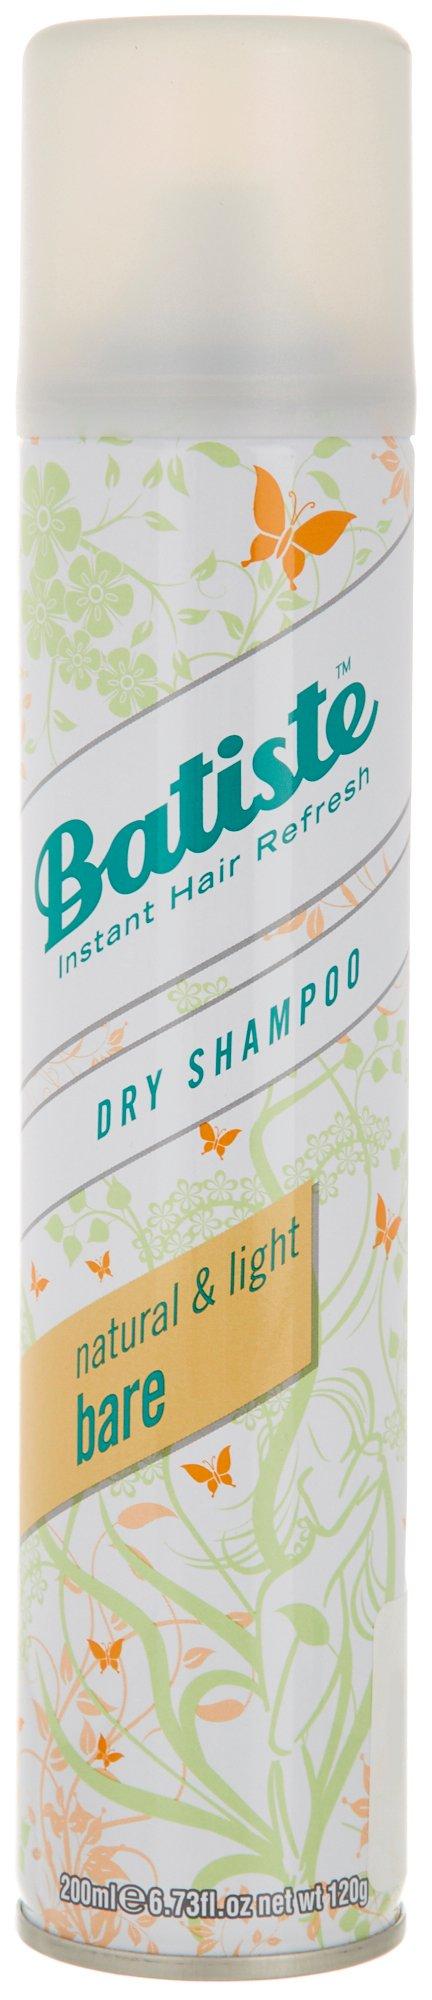 Bare Dry Shampoo 6.7 fl oz